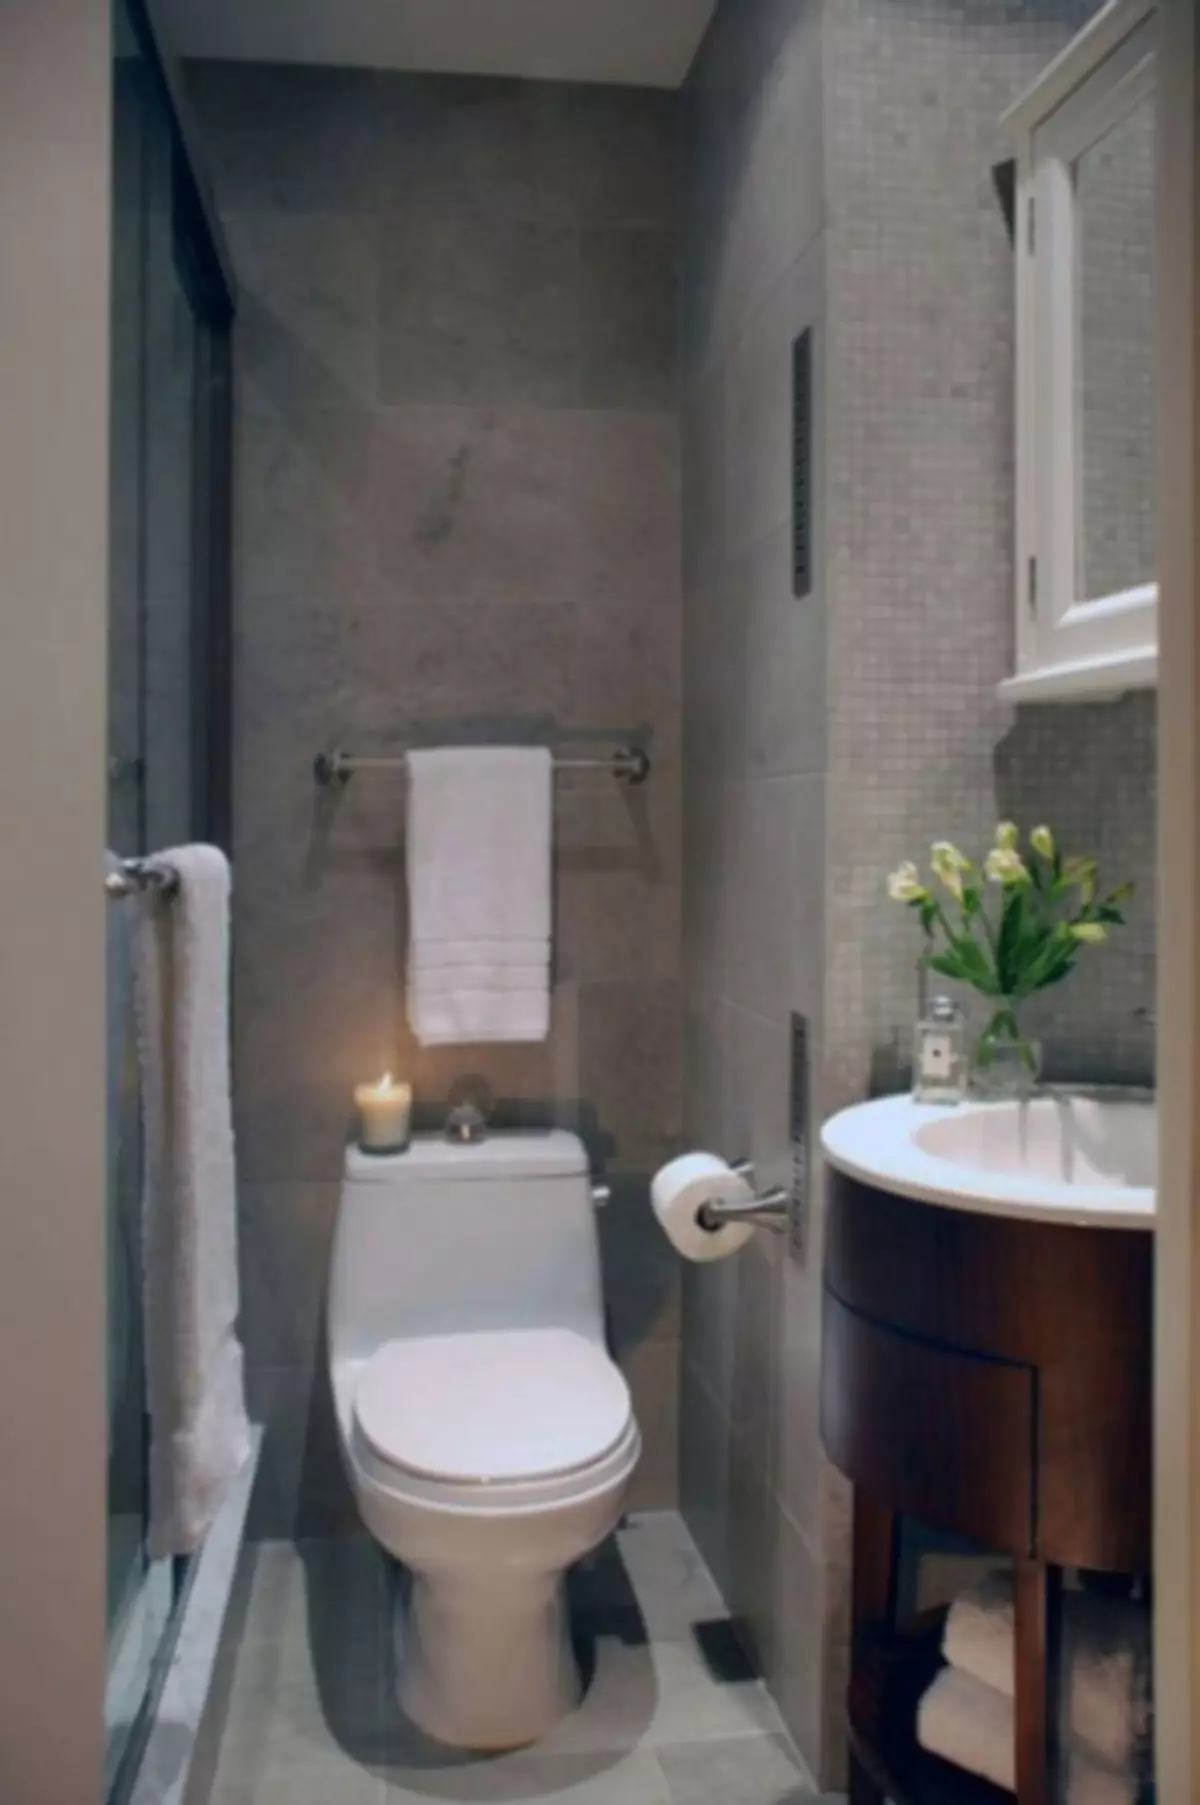 Banheiro 3 metros quadrados. m. - 80 fotos dos melhores exemplos de design